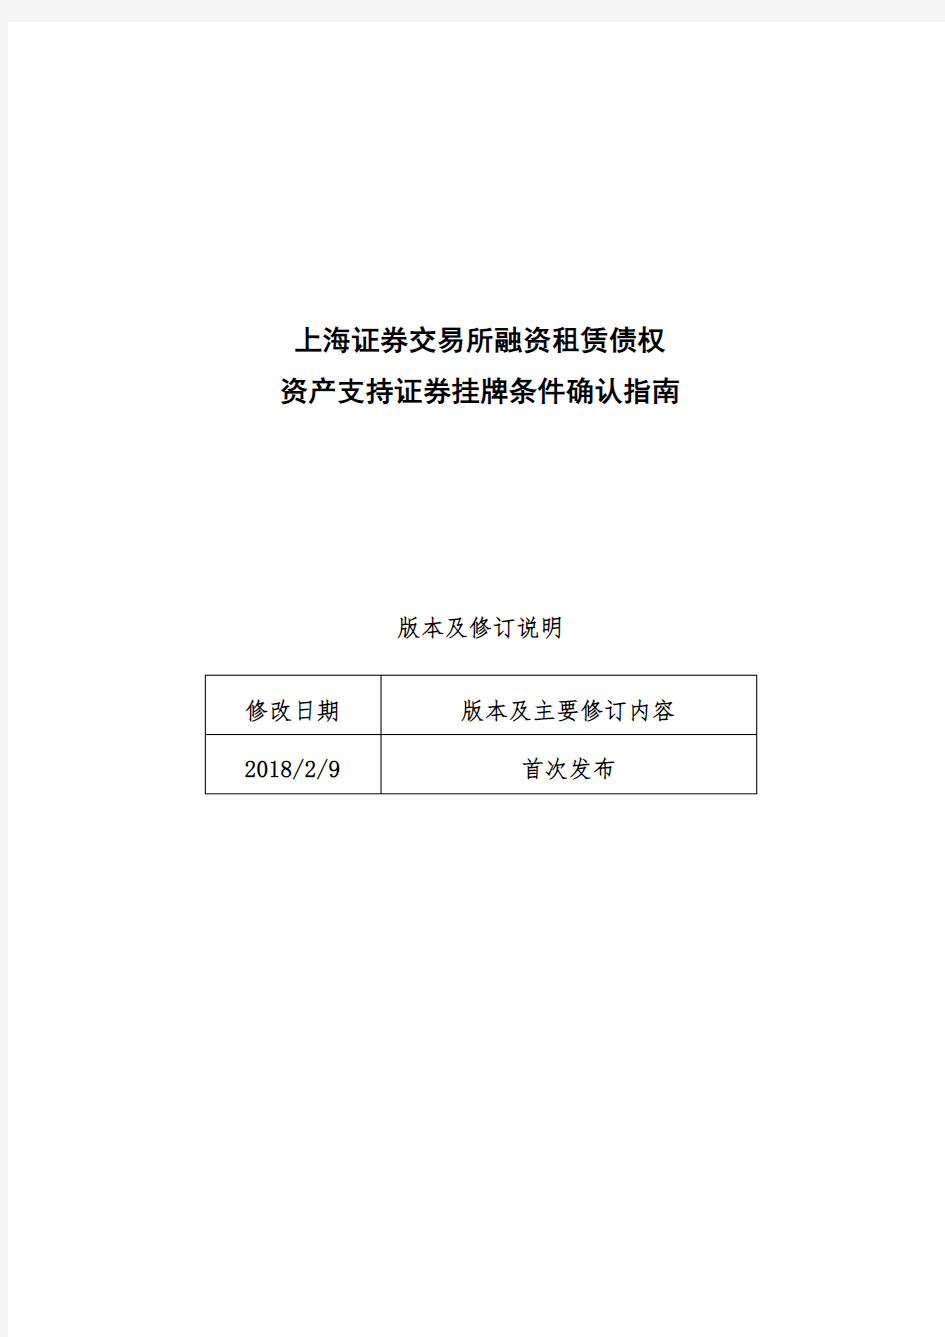 上海证券交易所融资租赁债权资产支持证券挂牌条件确认指南